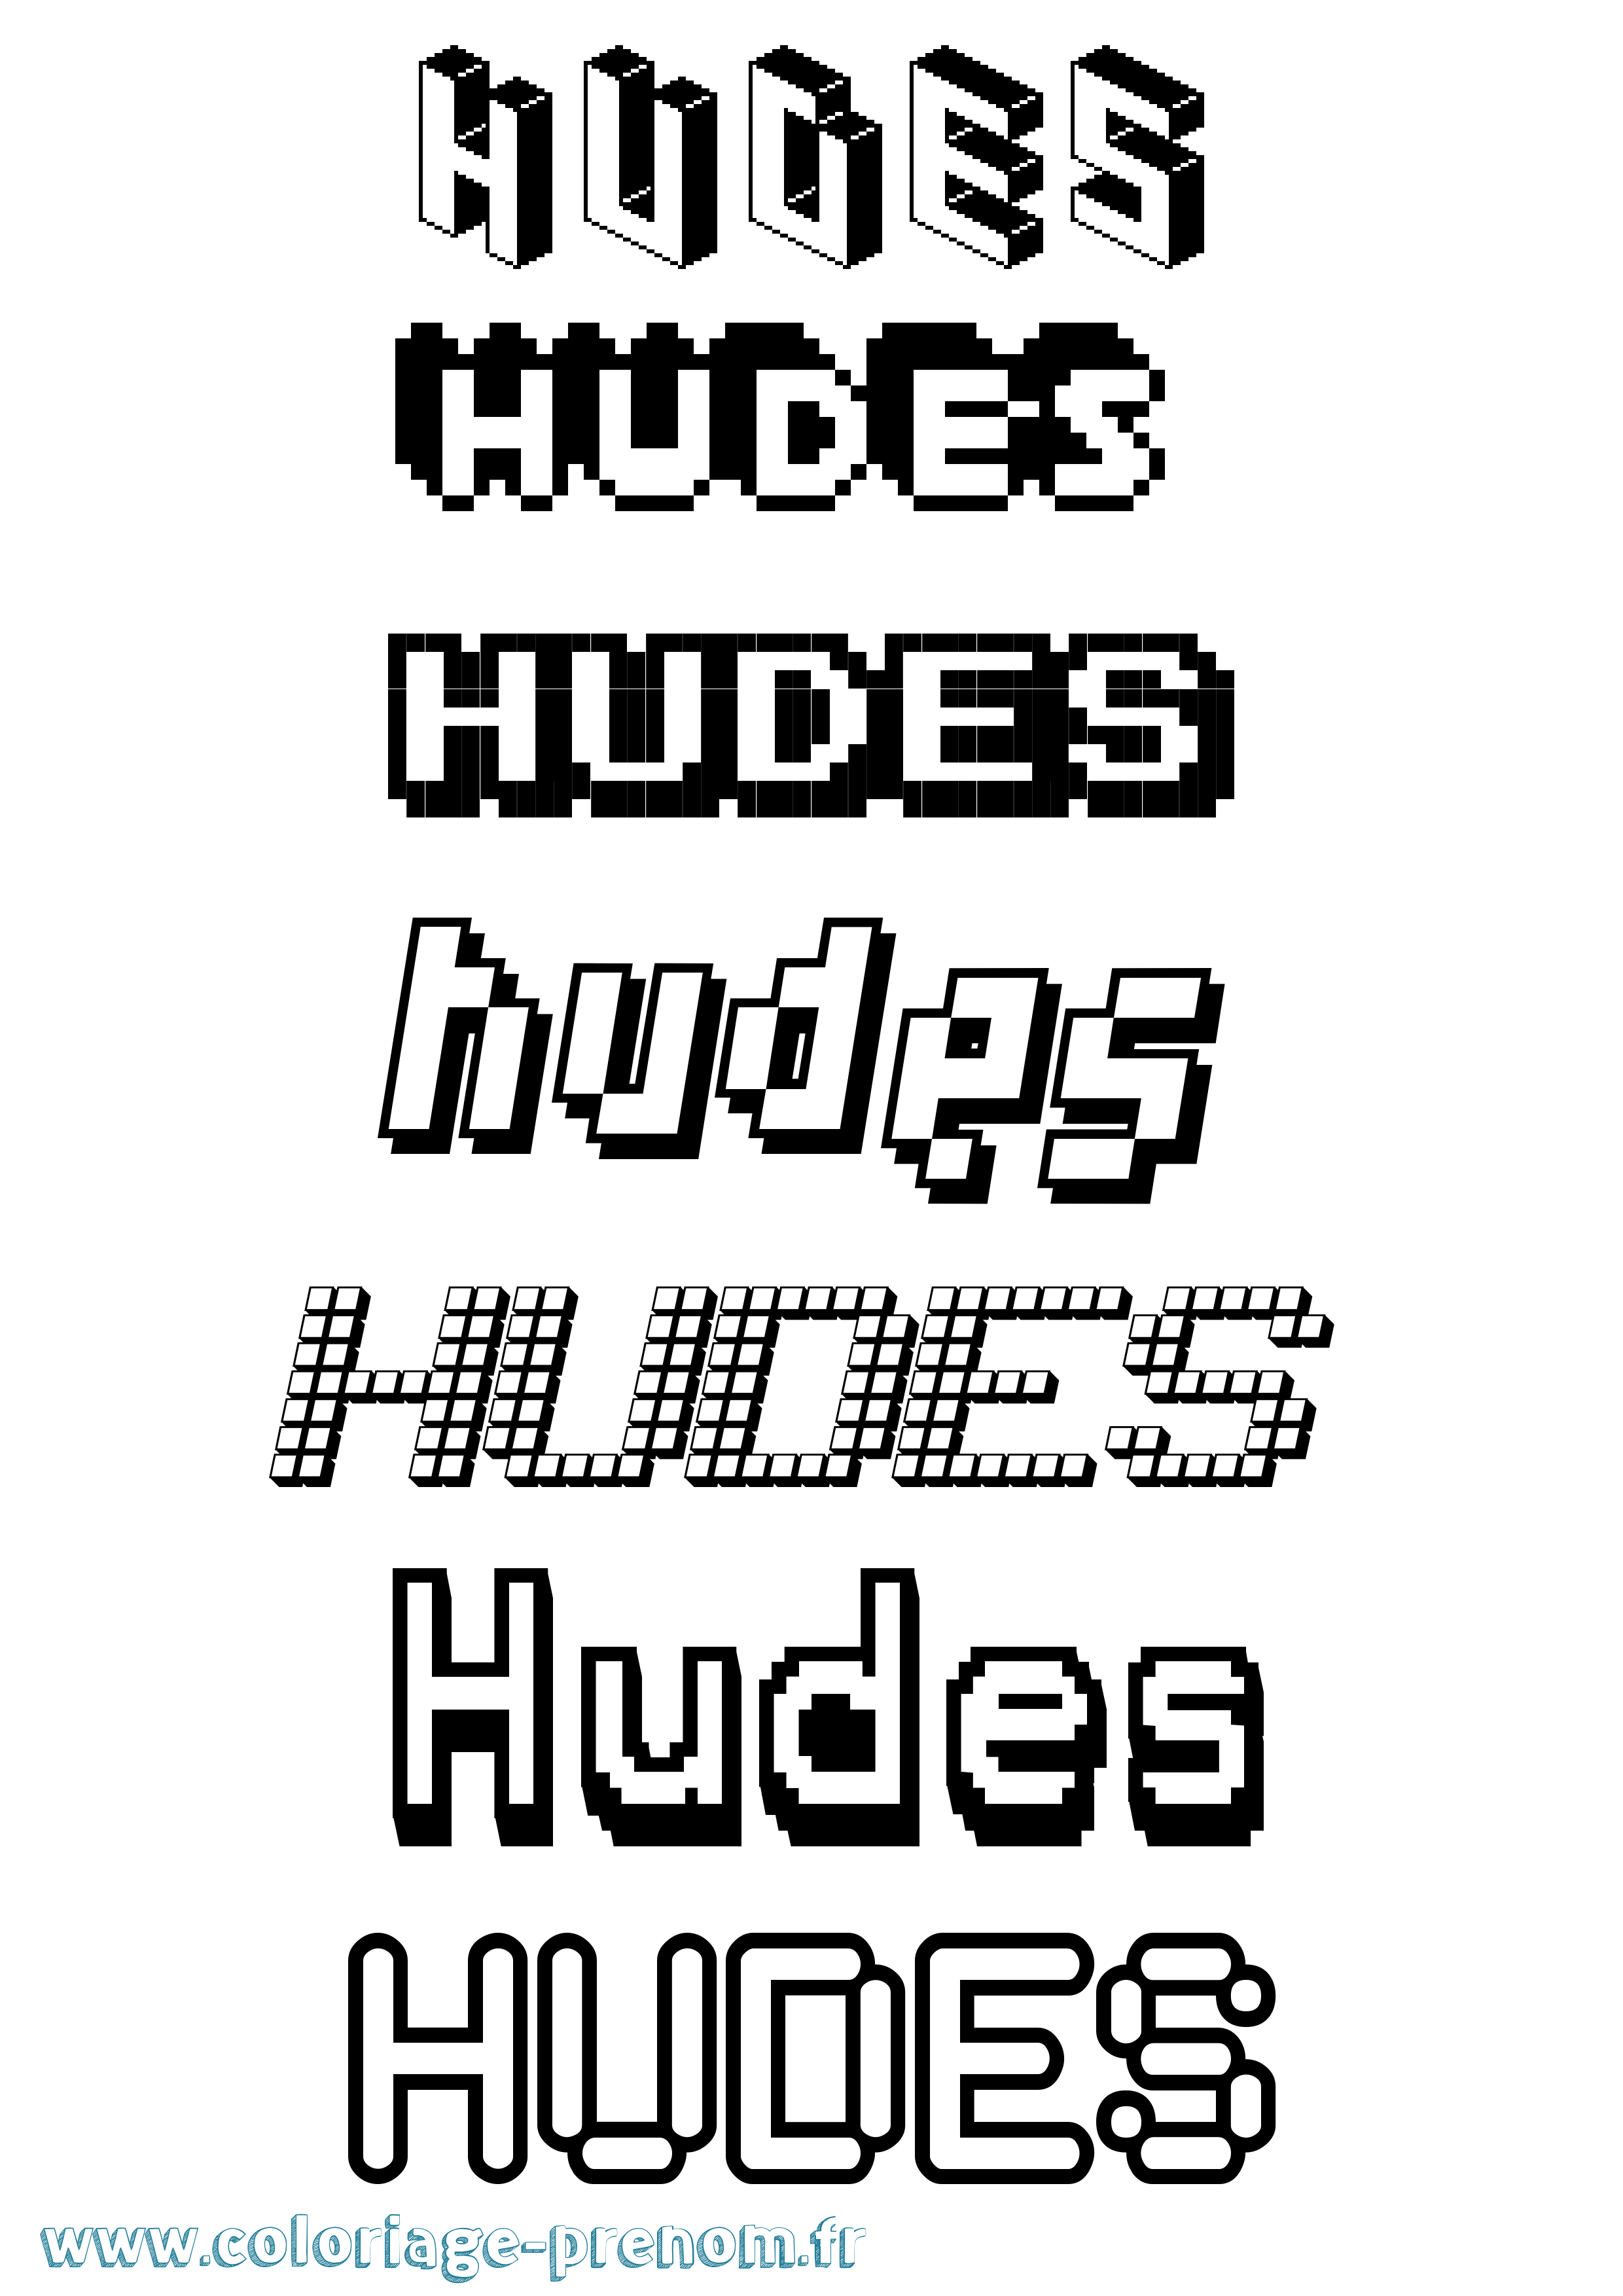 Coloriage prénom Hudes Pixel